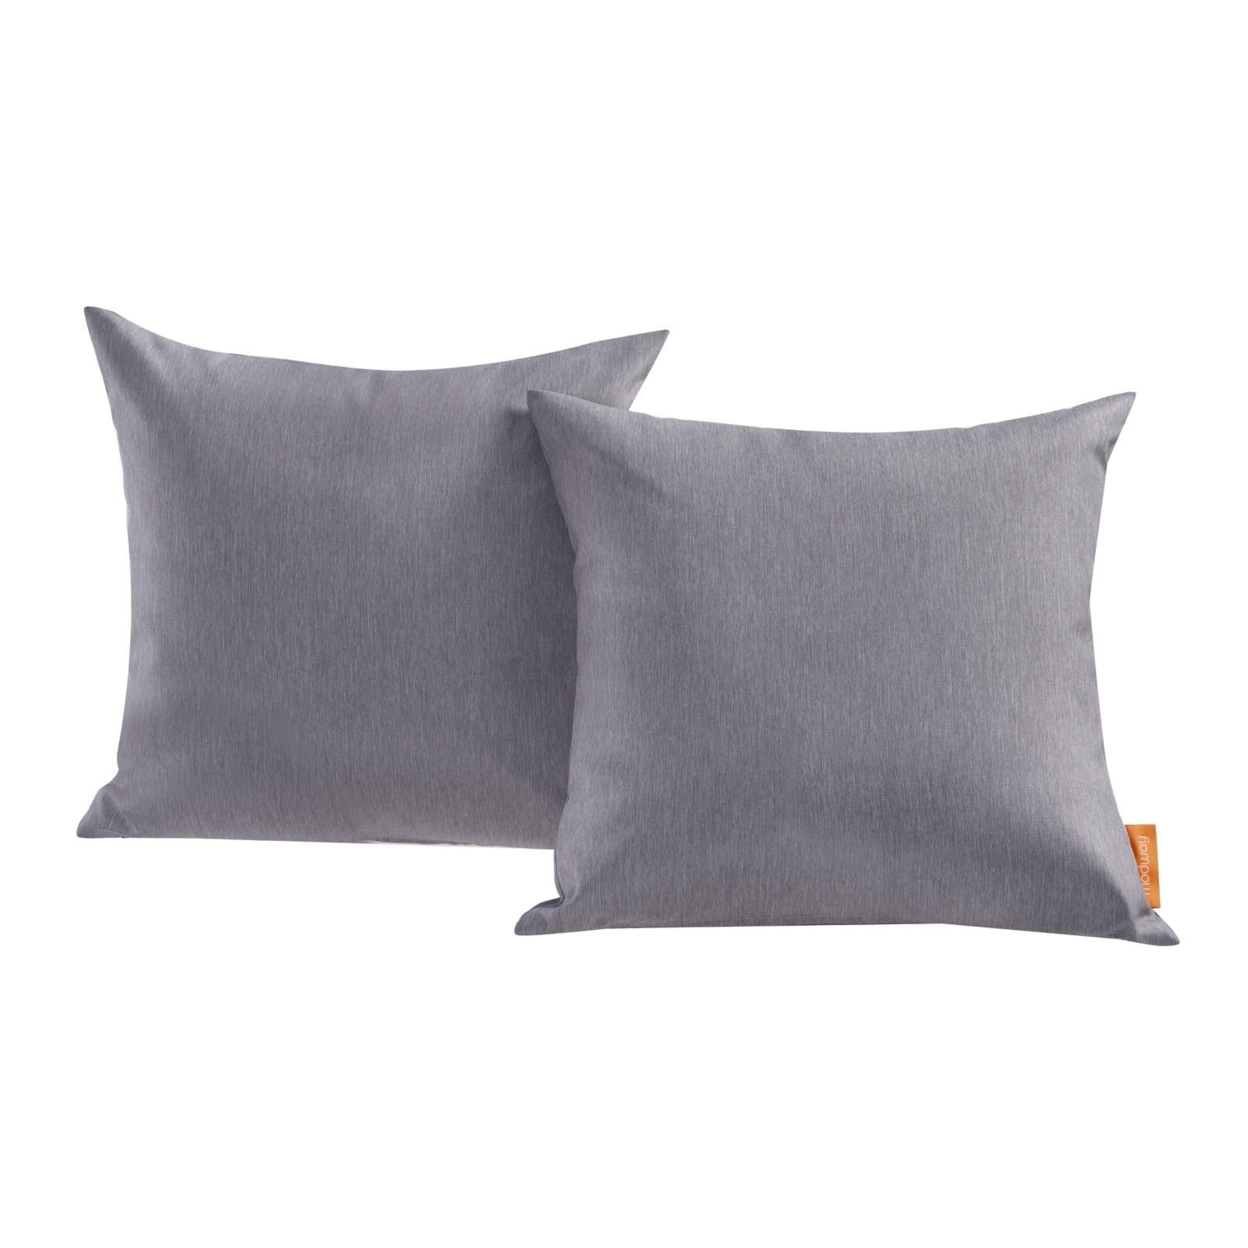 Convene Two Piece Outdoor Patio Pillow Set,Gray